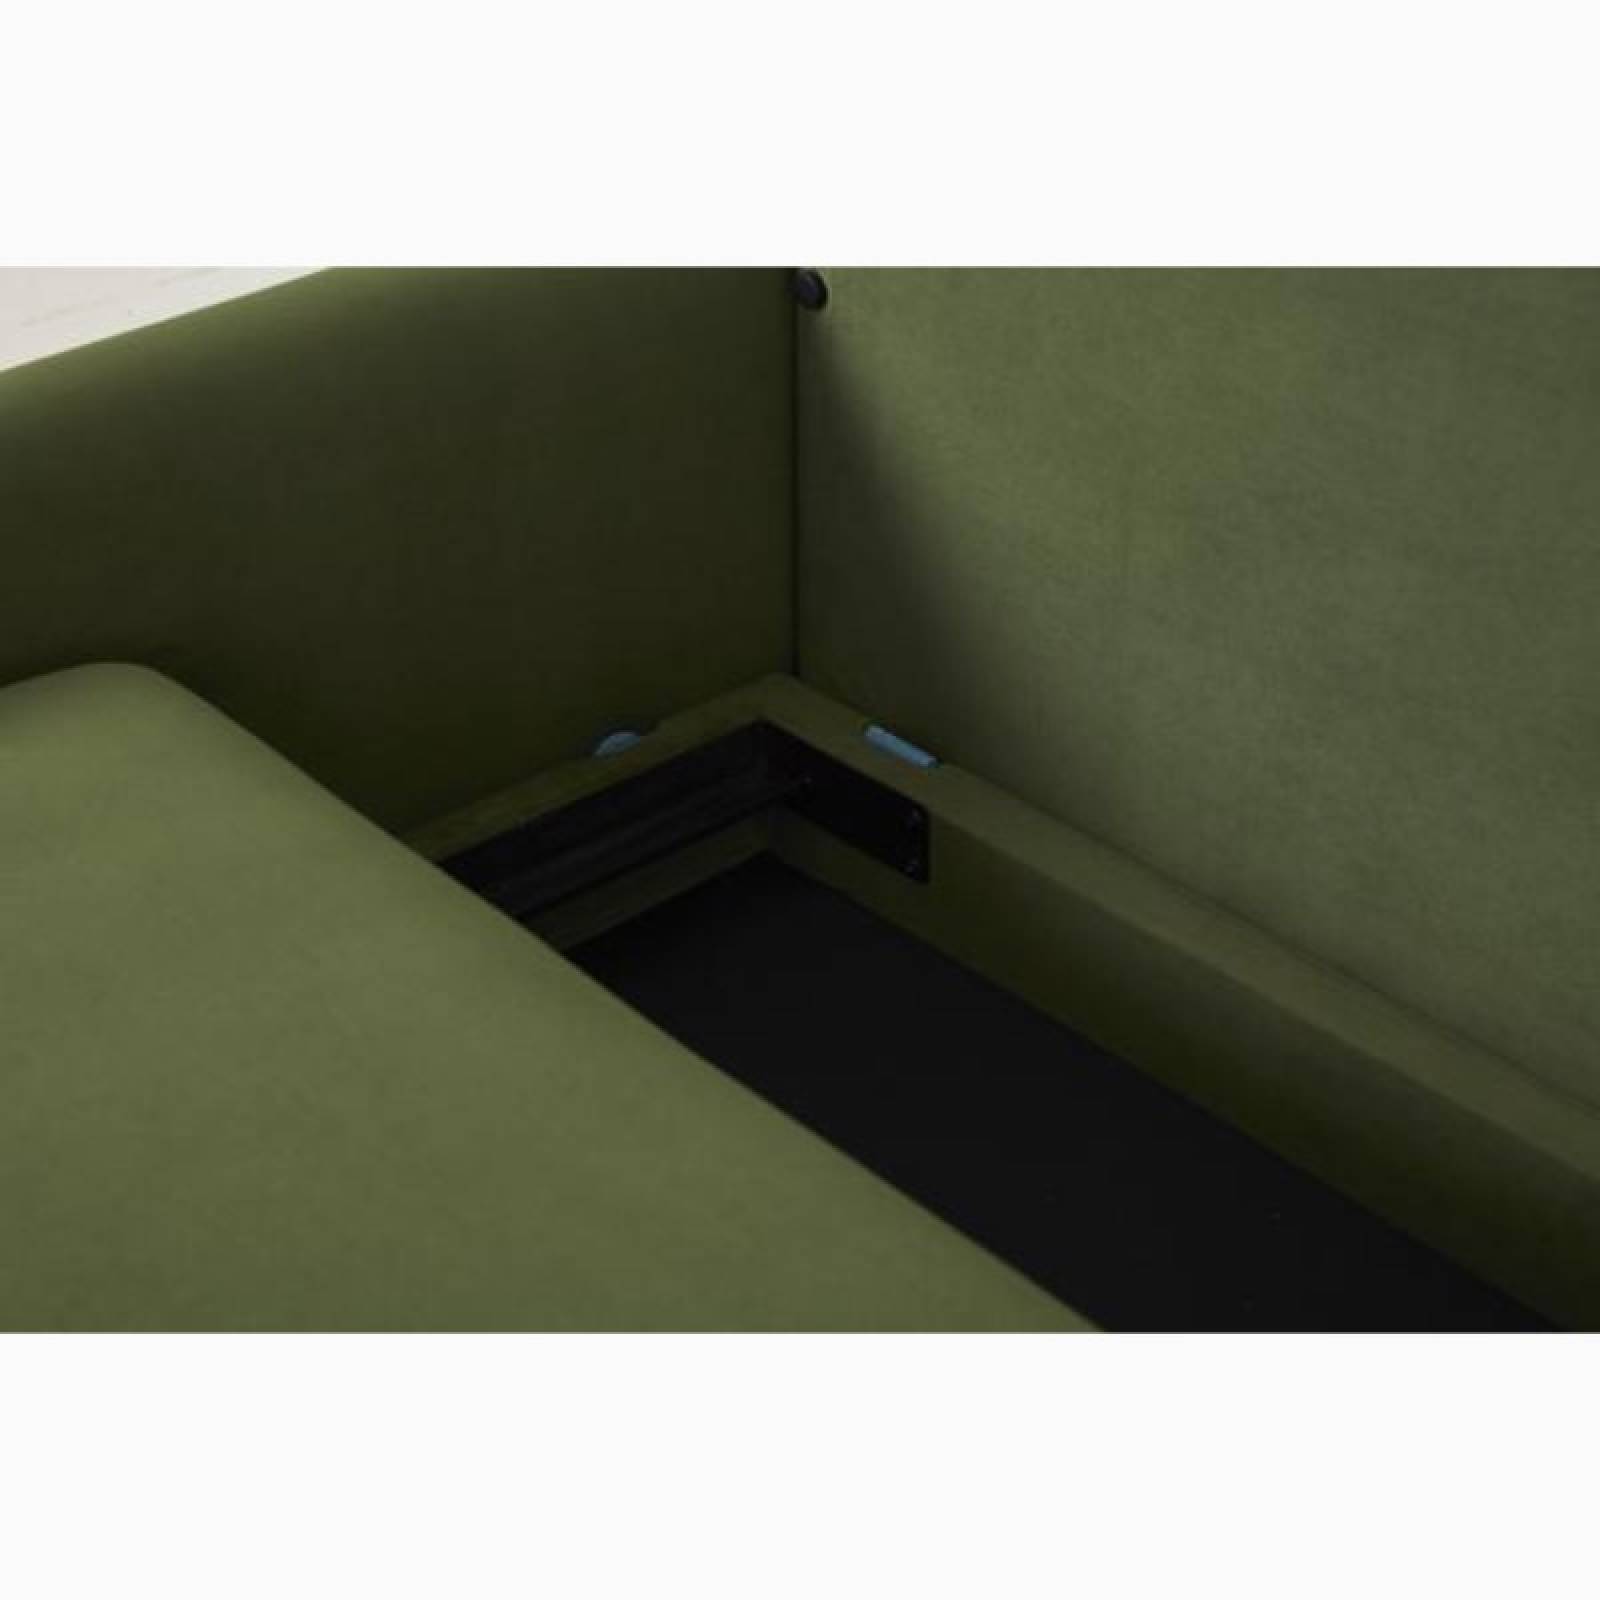 Swyft Model 04 - 3 Seater Sofa Bed - Velvet Vine thumbnails